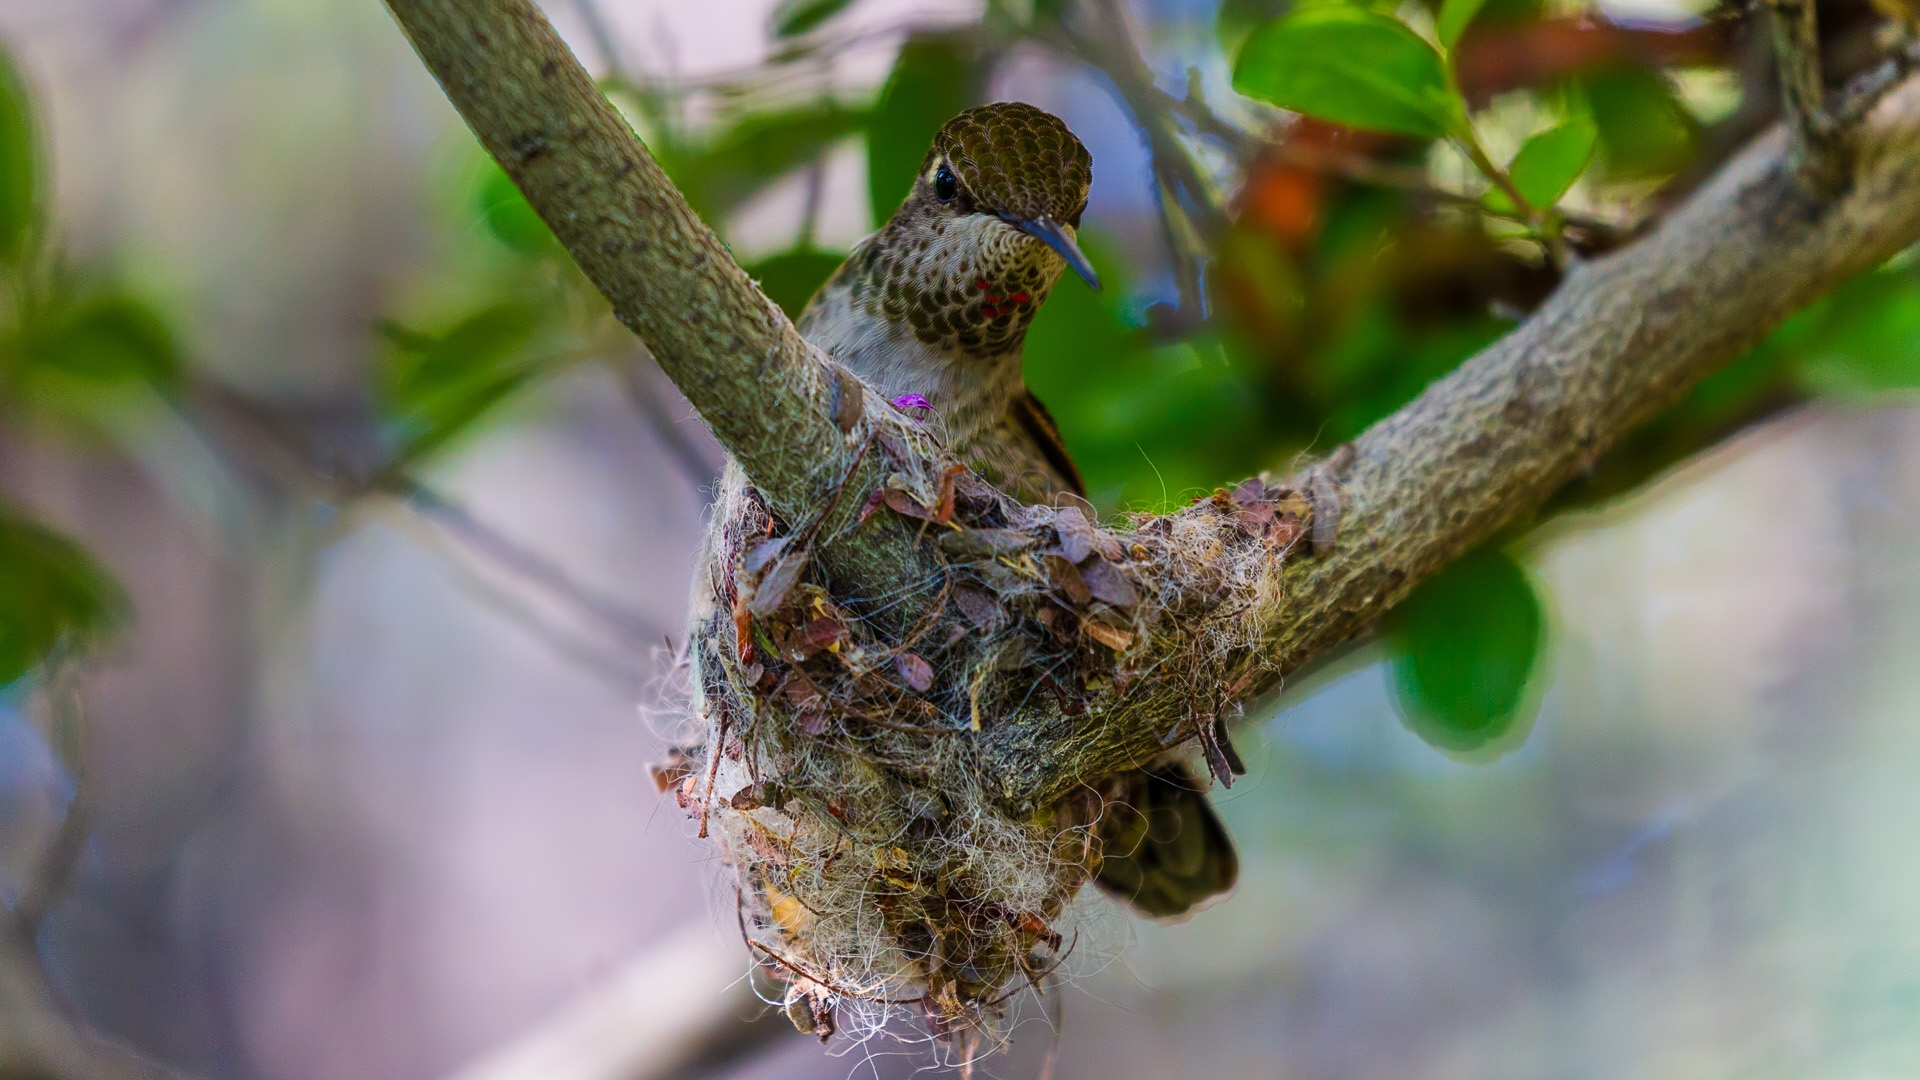 Anna's Hummingbird (Calypte anna)©